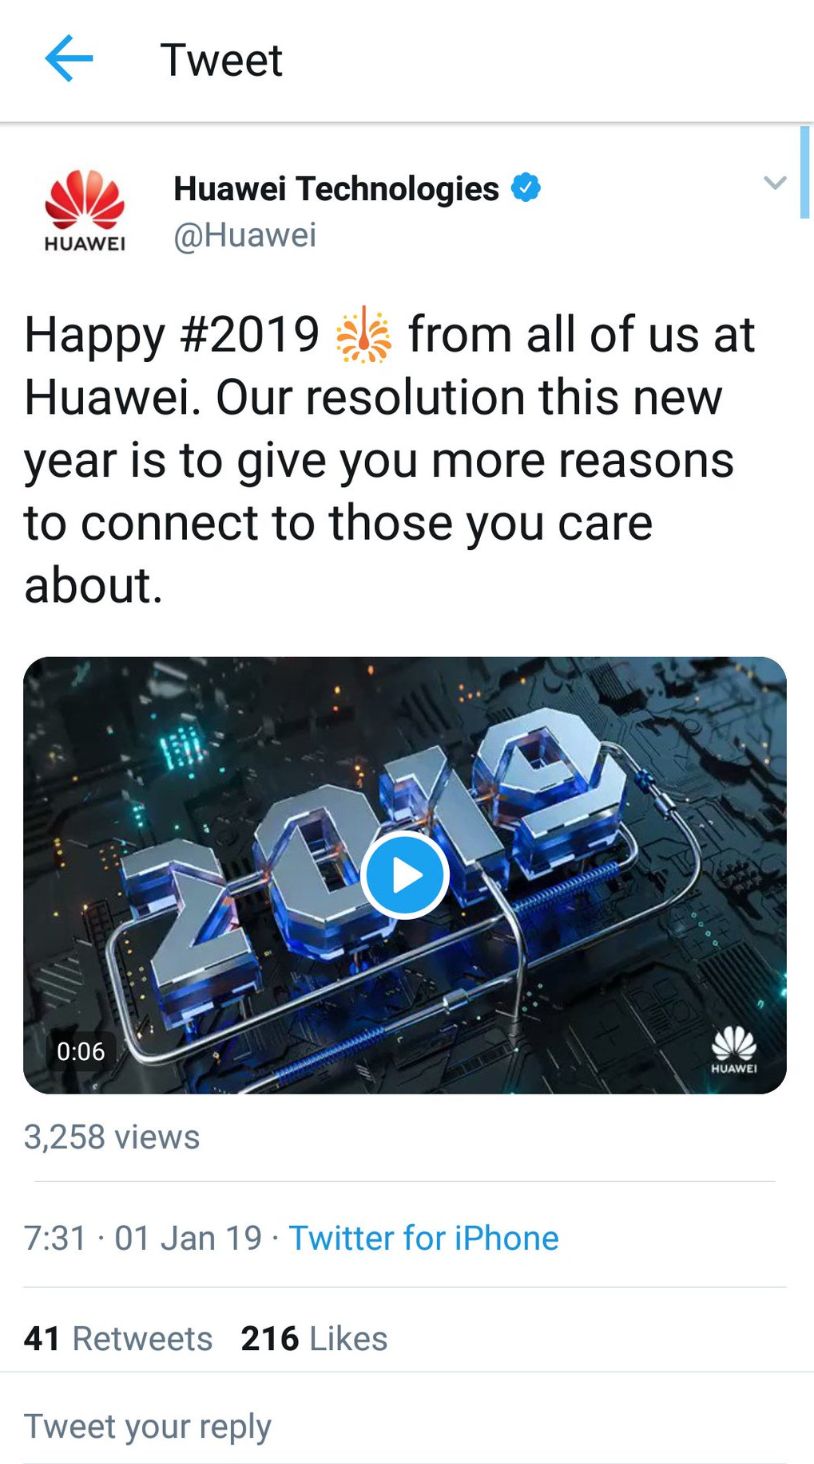 Pracovník společnosti Huawei poslal tweet z iPhonu. Přišli o pozici i peníze